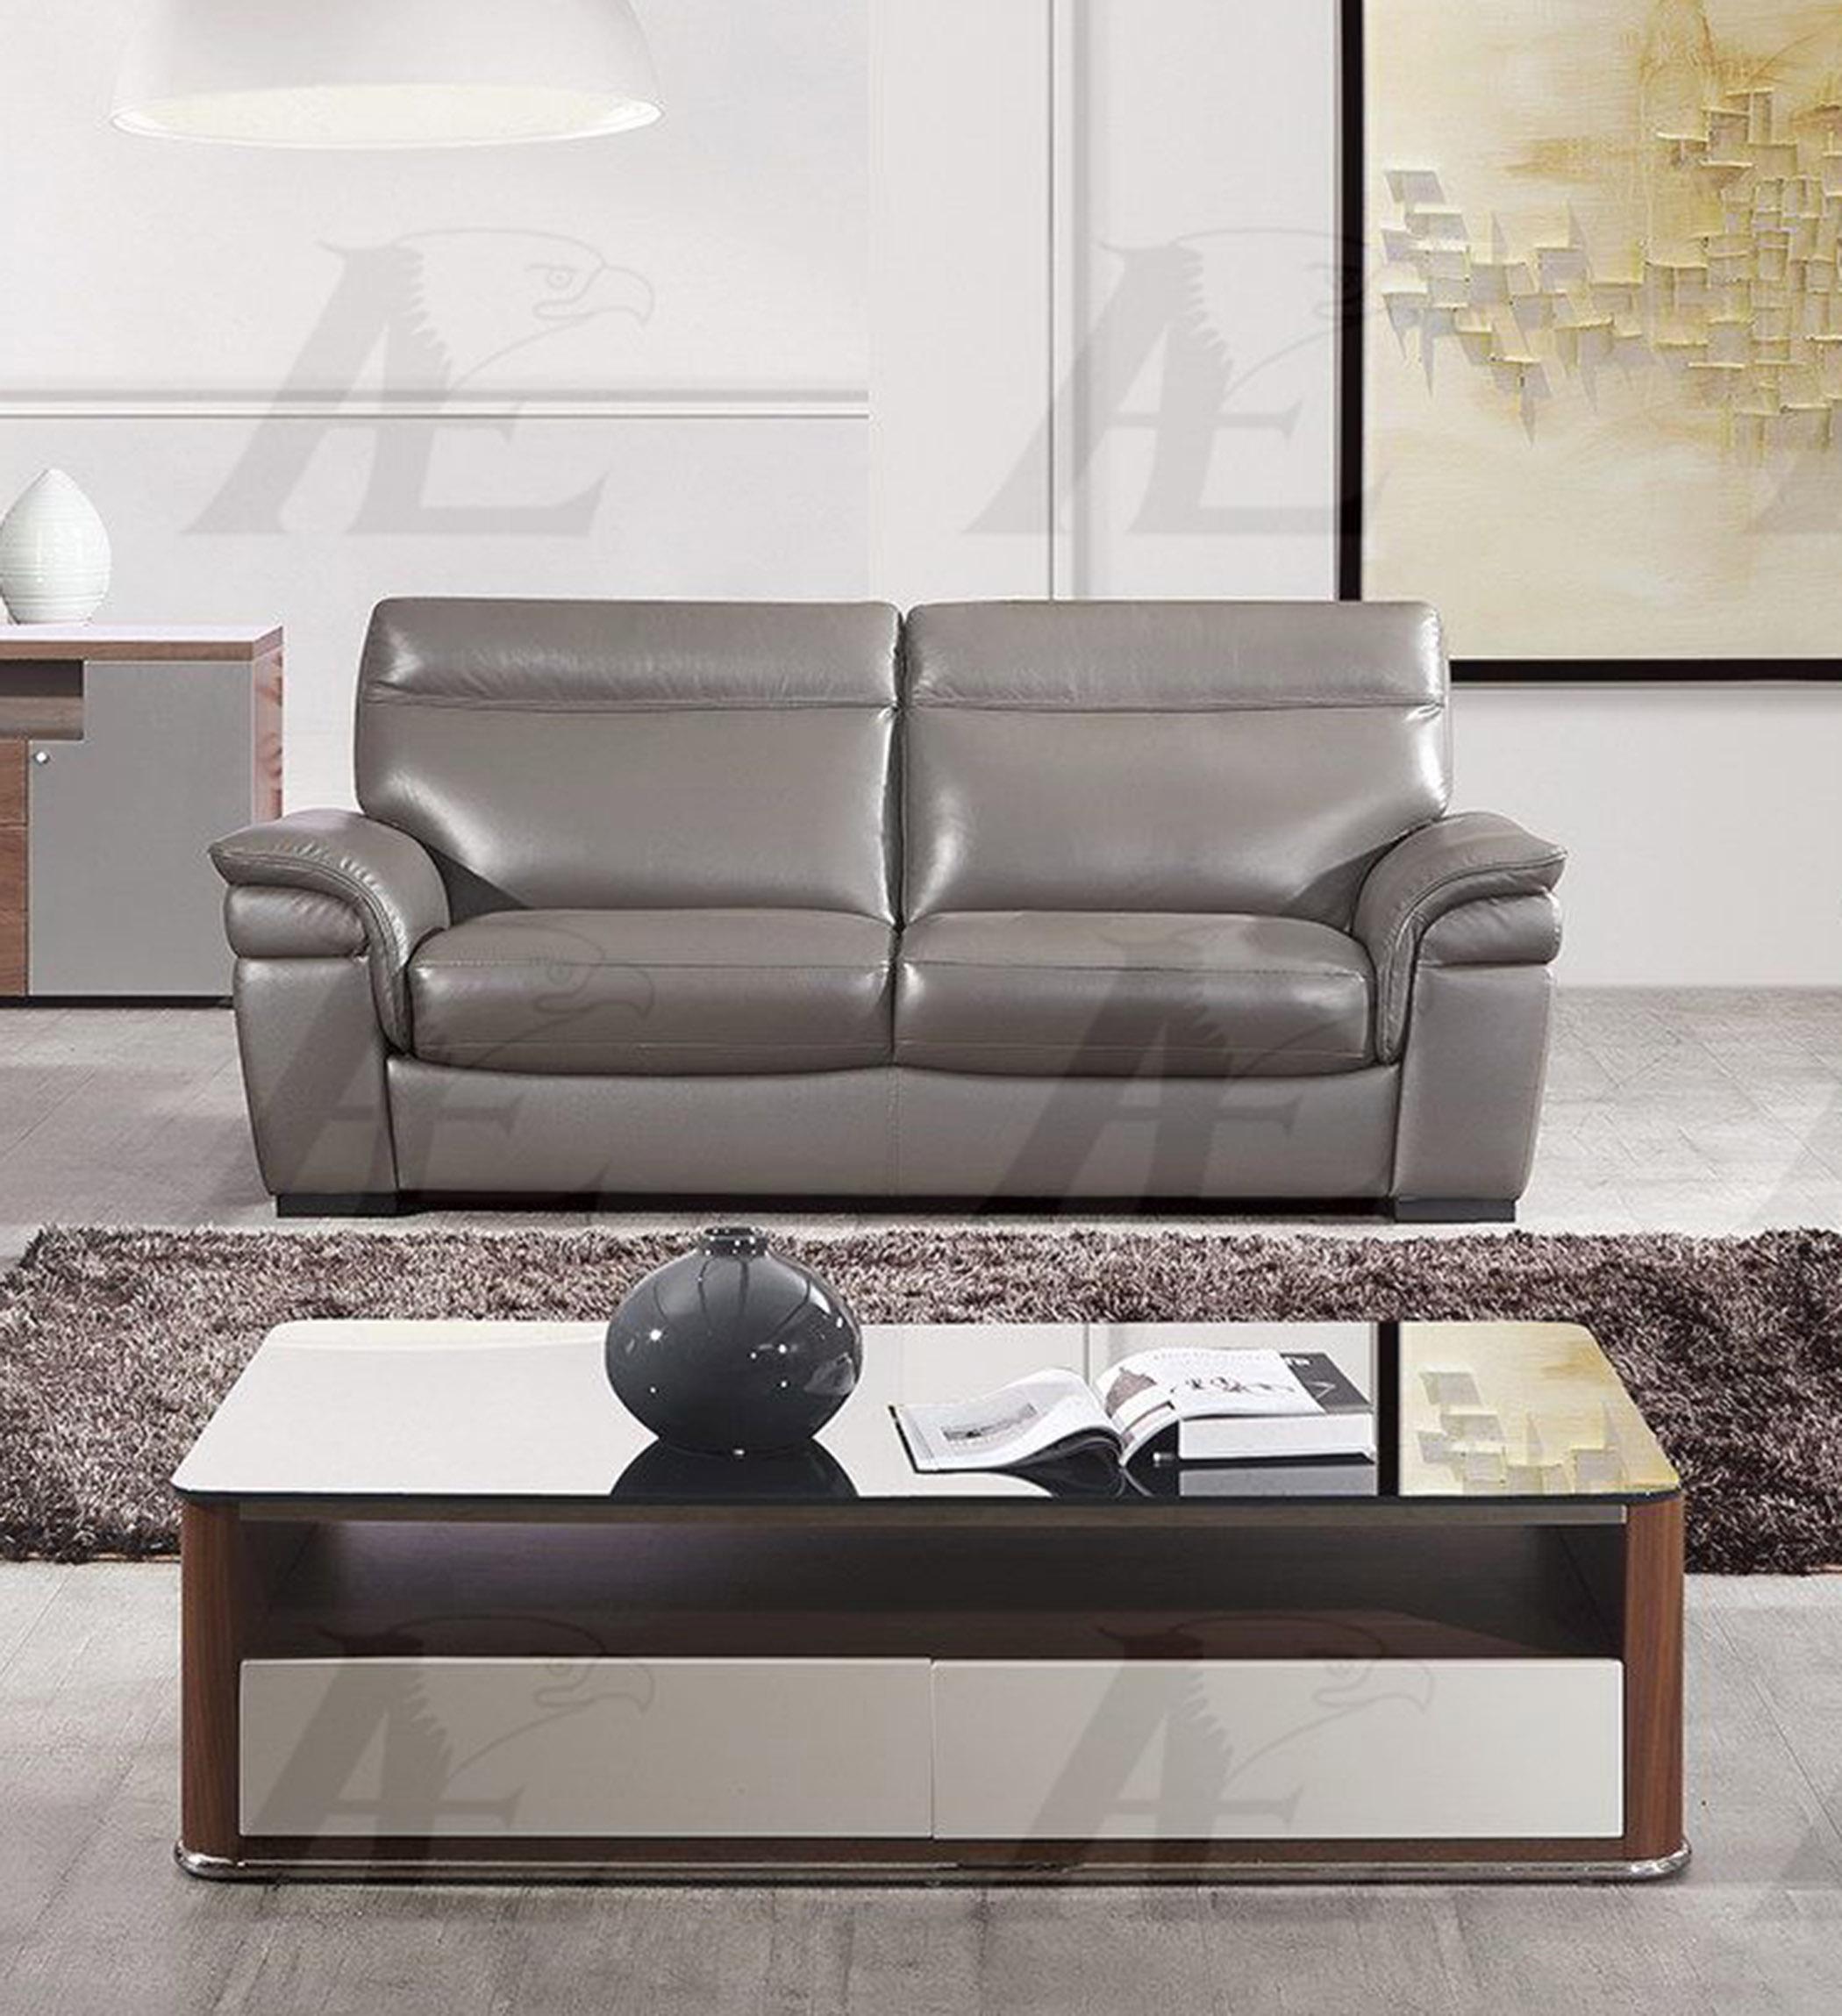 

                    
American Eagle Furniture EK020-TPE Sofa and Loveseat Set Taupe Italian Leather Purchase 
